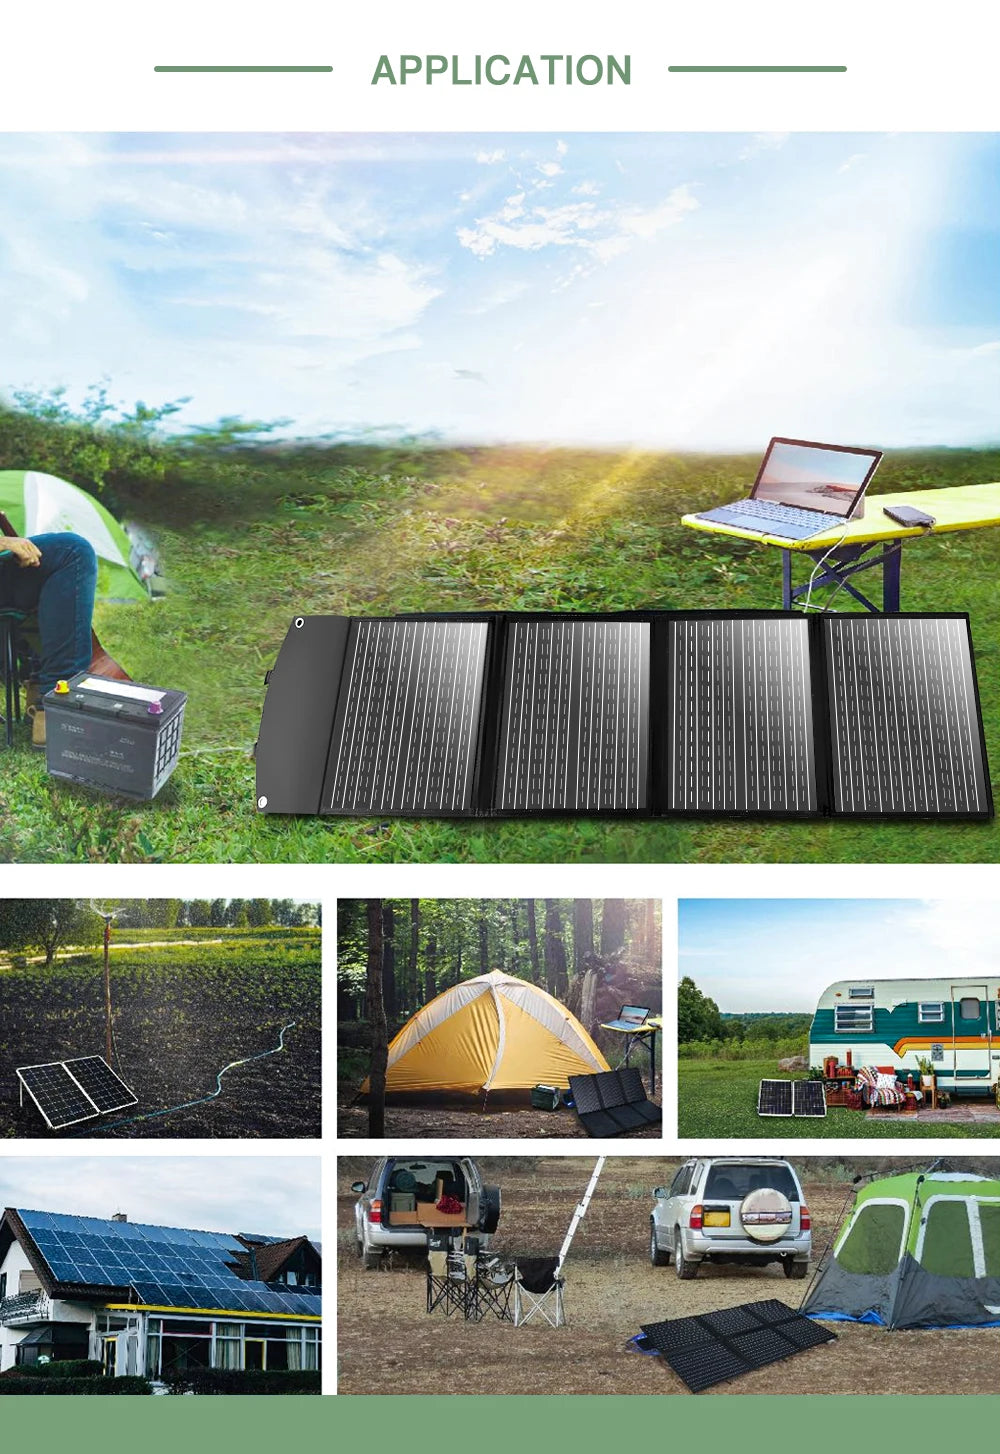 SMARAAD 150W Foldable Solar Panel Kit Waterproof IP68 - Inverted Powers